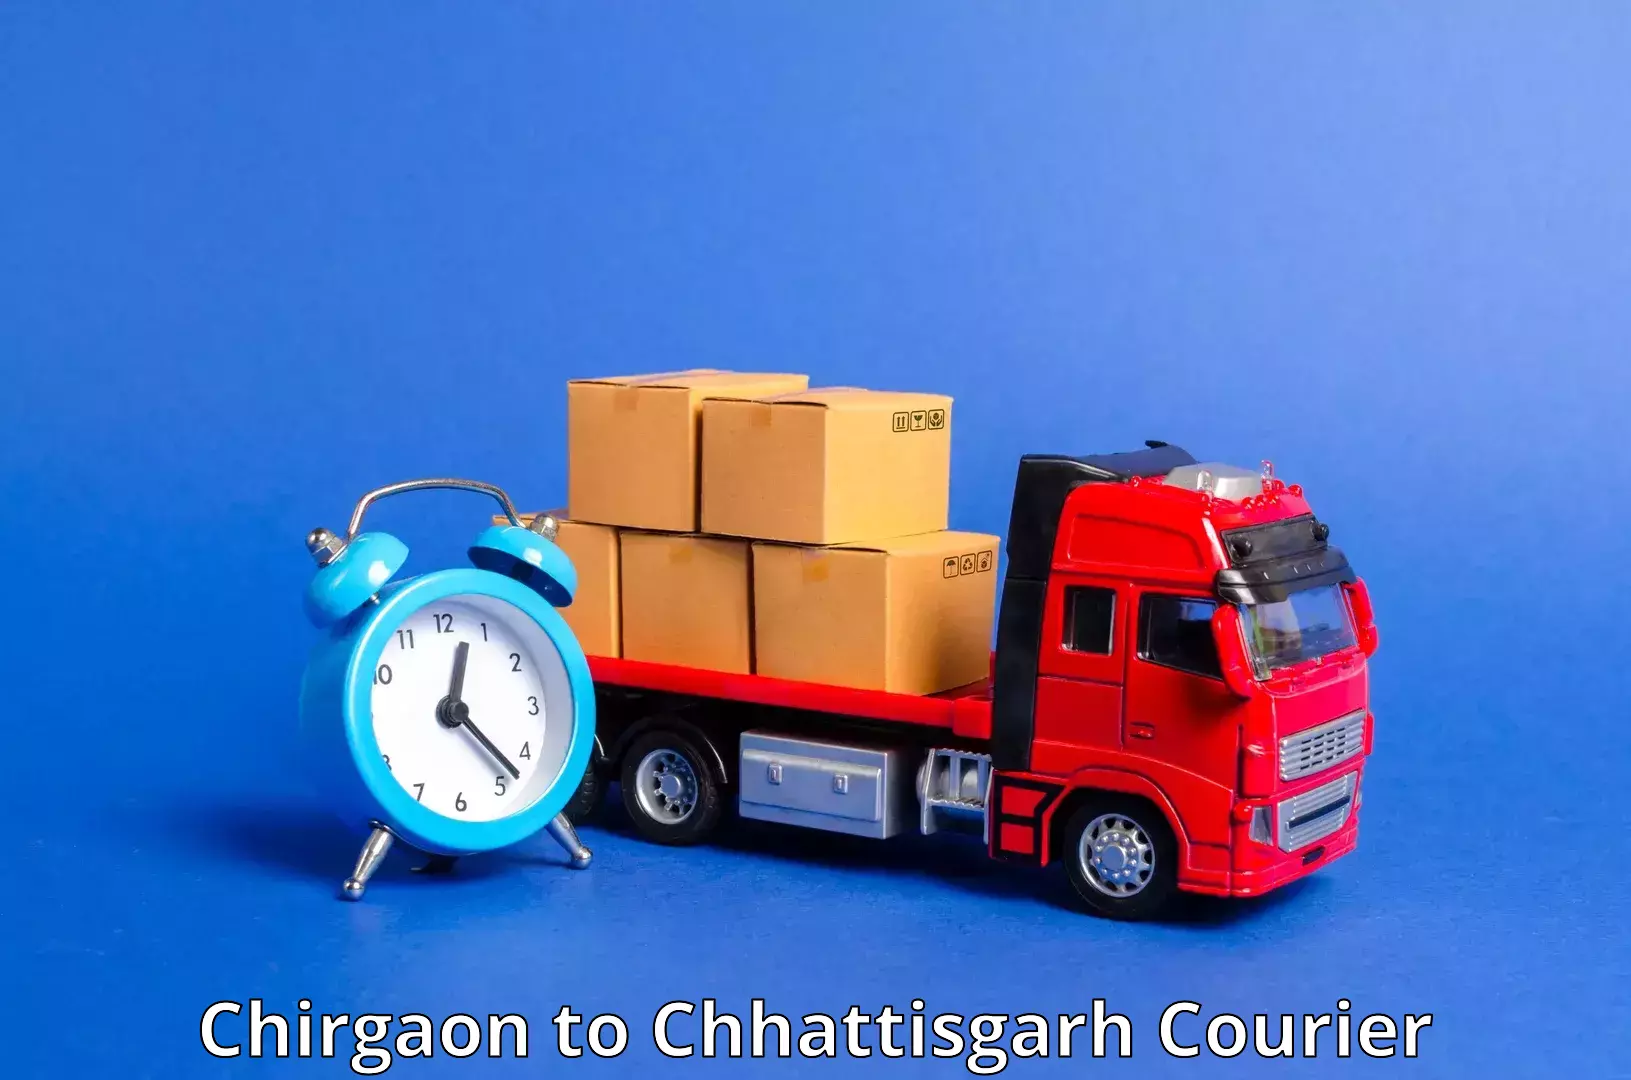 Door-to-door freight service in Chirgaon to Bijapur Chhattisgarh